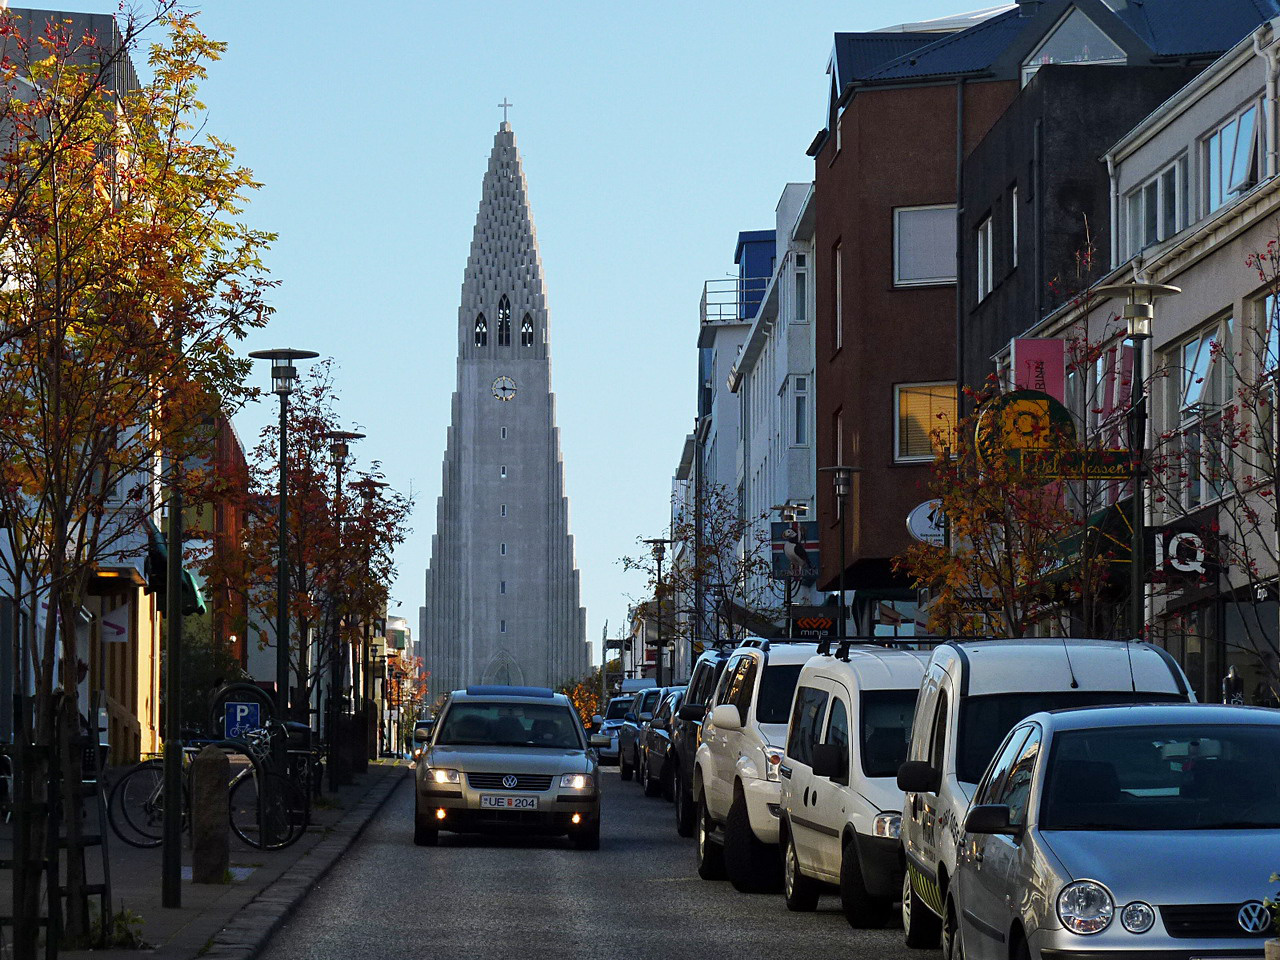 Belvárosi utca Reykjavíkban, háttérben a modern Hallgrímskirkaja templommal, amelynek tornyából páratlan kilátás nyílik a városra és a környező tájra. Az utcák példásan tiszták, Izlandon szinte ismeretlen fogalom a közterületi szemetelés